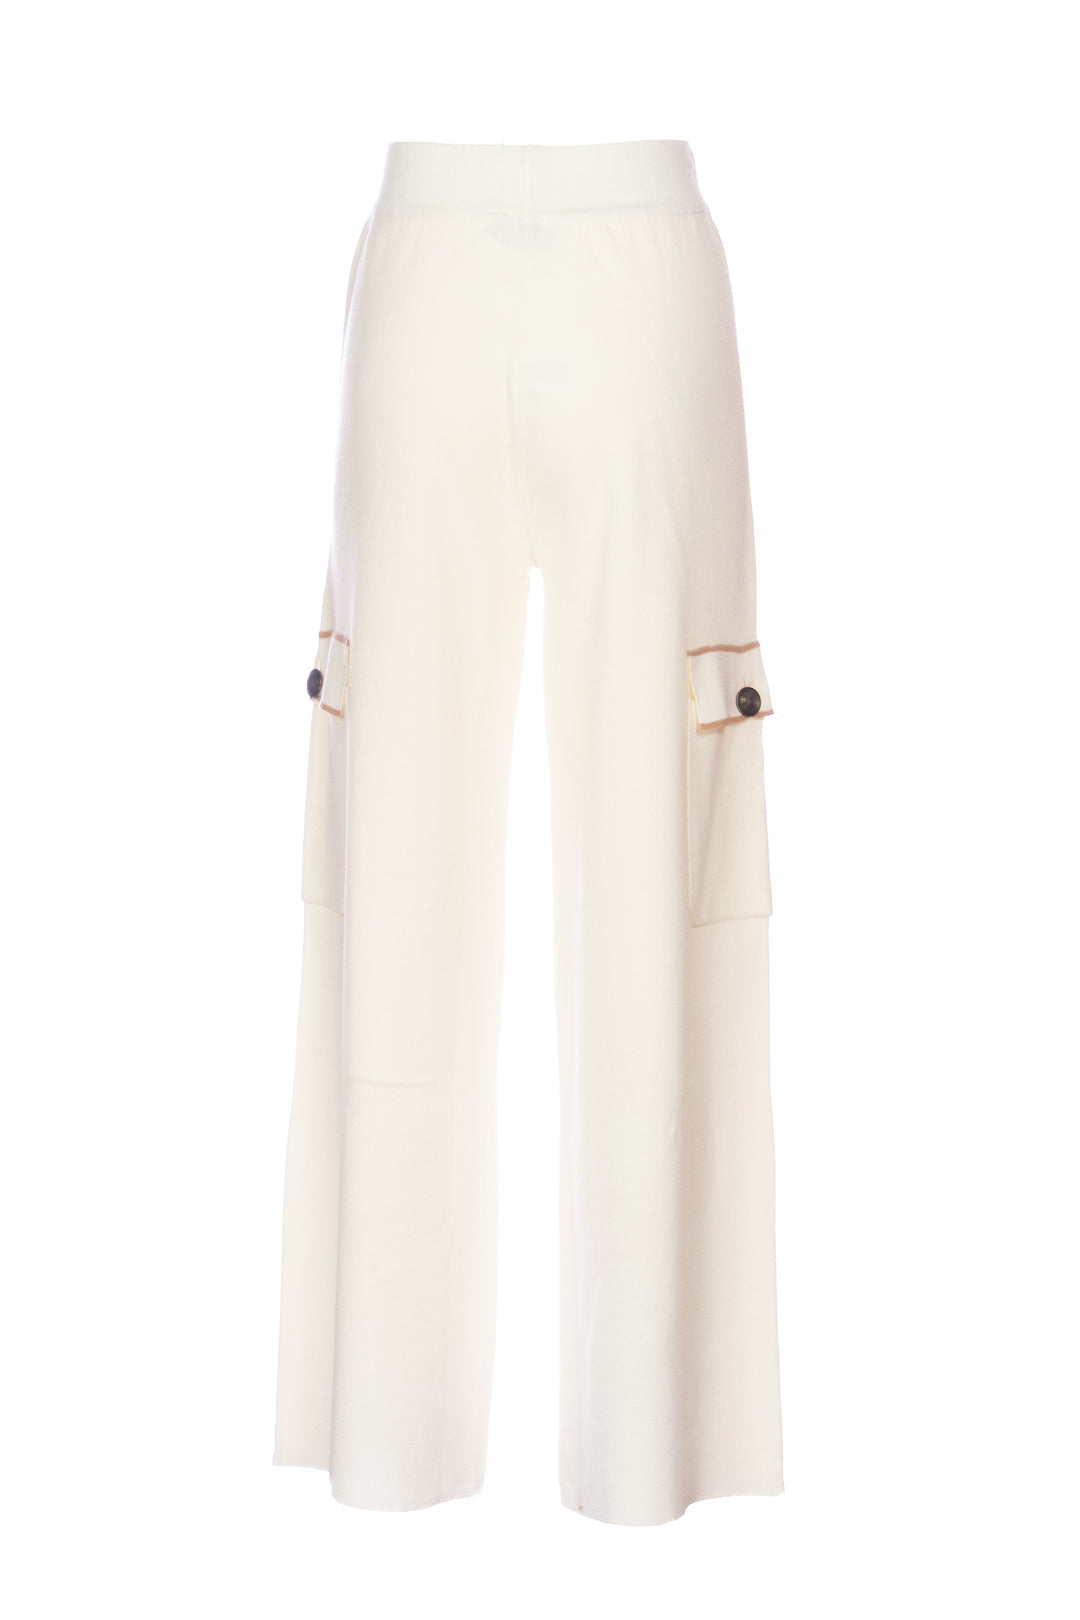 NENETTE Pantalone in maglia “YOUNG” avorio in lana blend e dettagli a contrasto - Mancinelli 1954